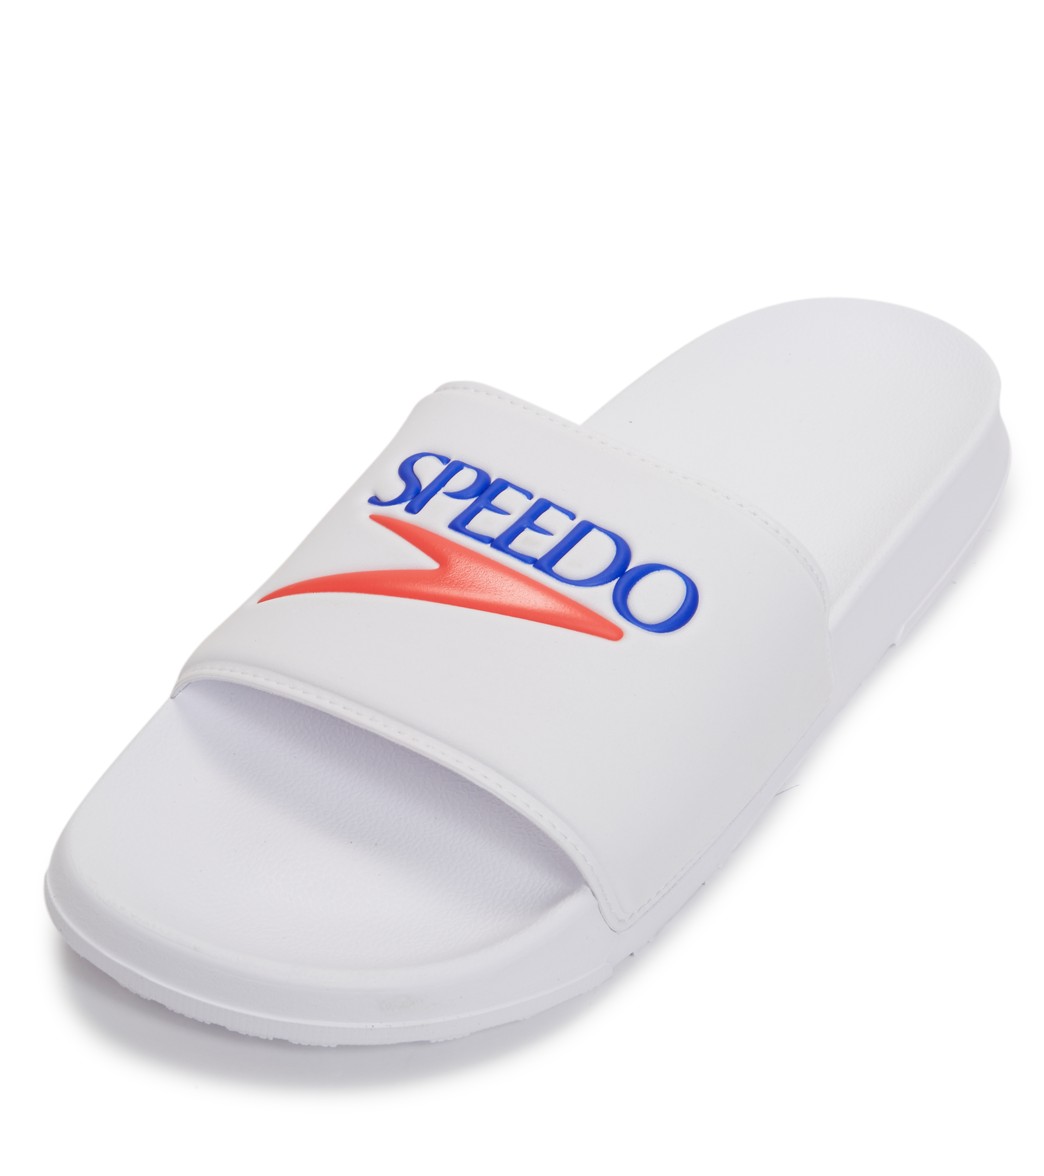 Speedo Men's Deck Slides - White/Blue 14 - Swimoutlet.com